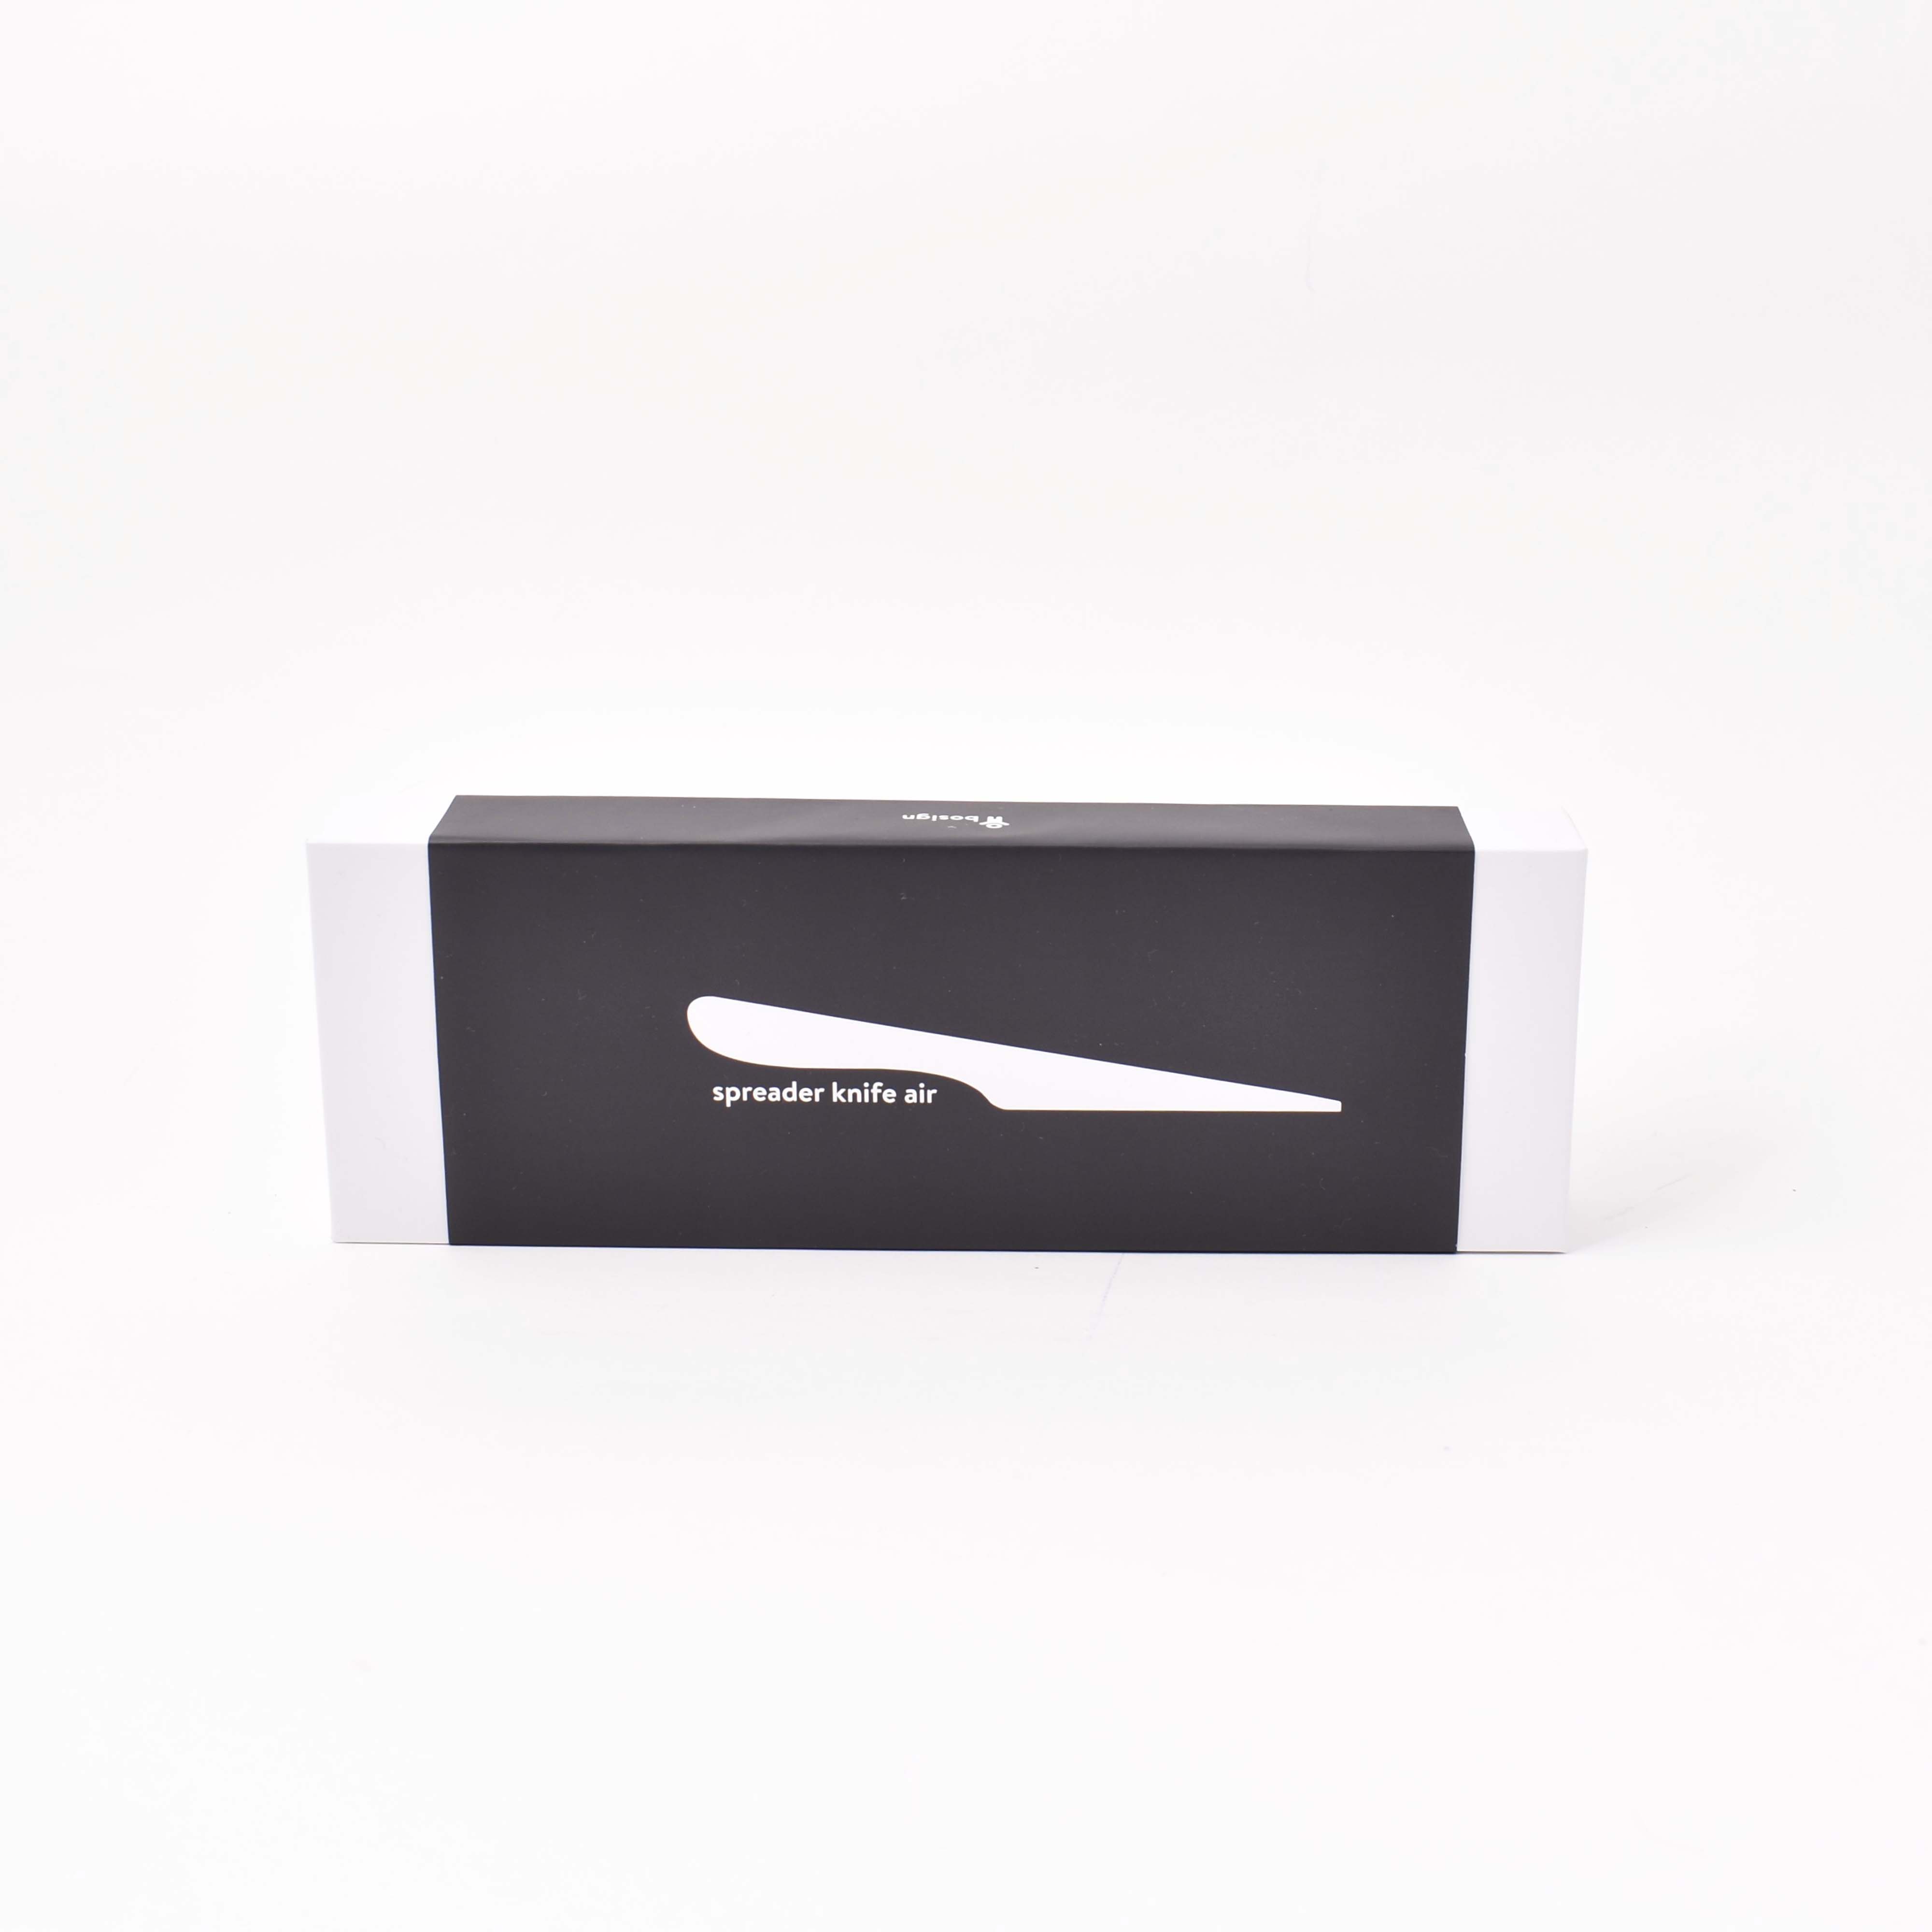 förpackning i svart och vitt till självstående smörkniv i olivträ